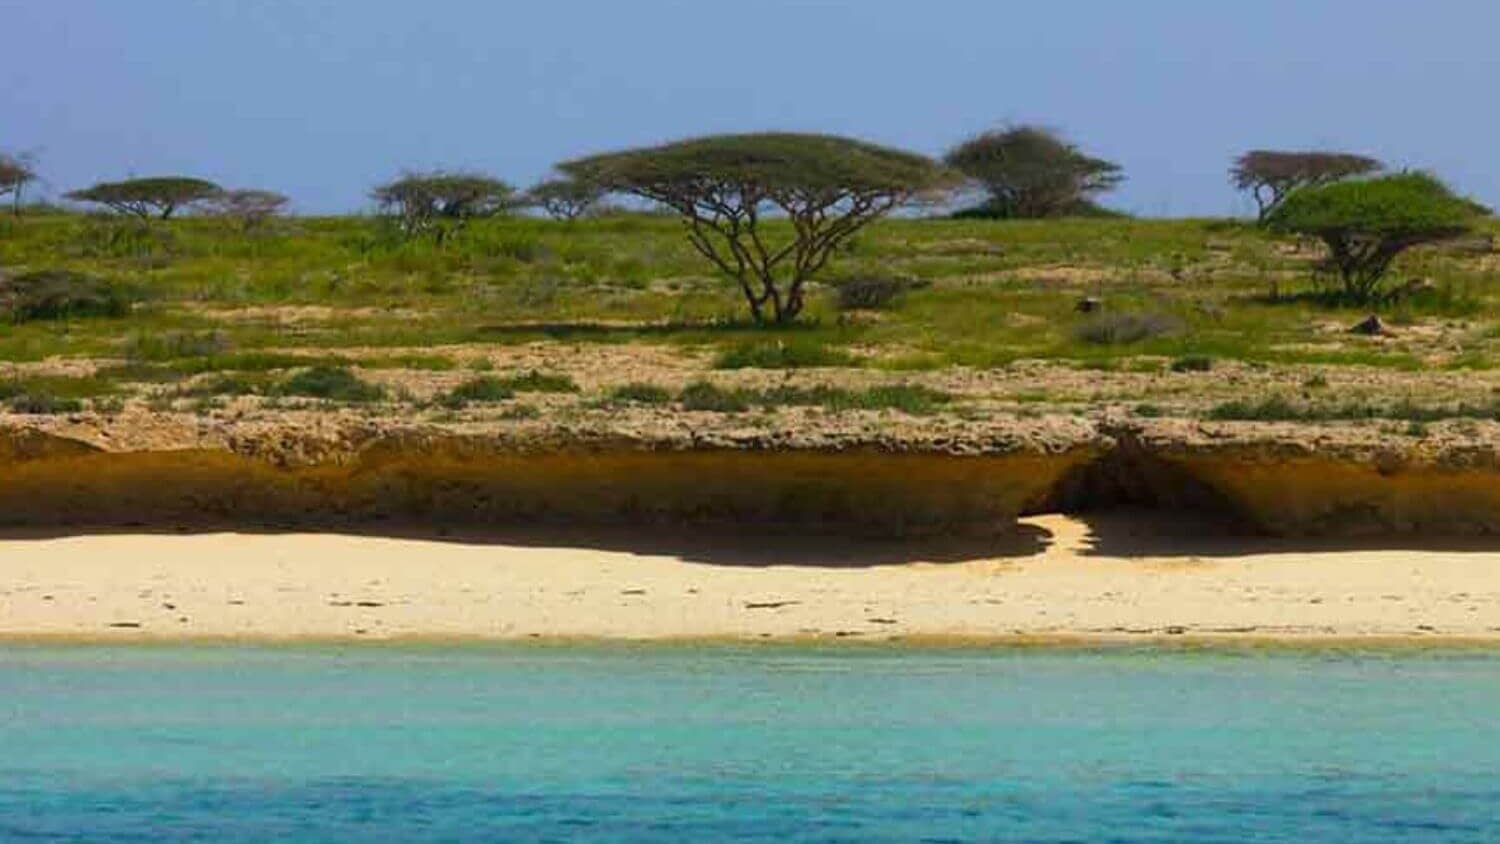 Dahlak Archipelago